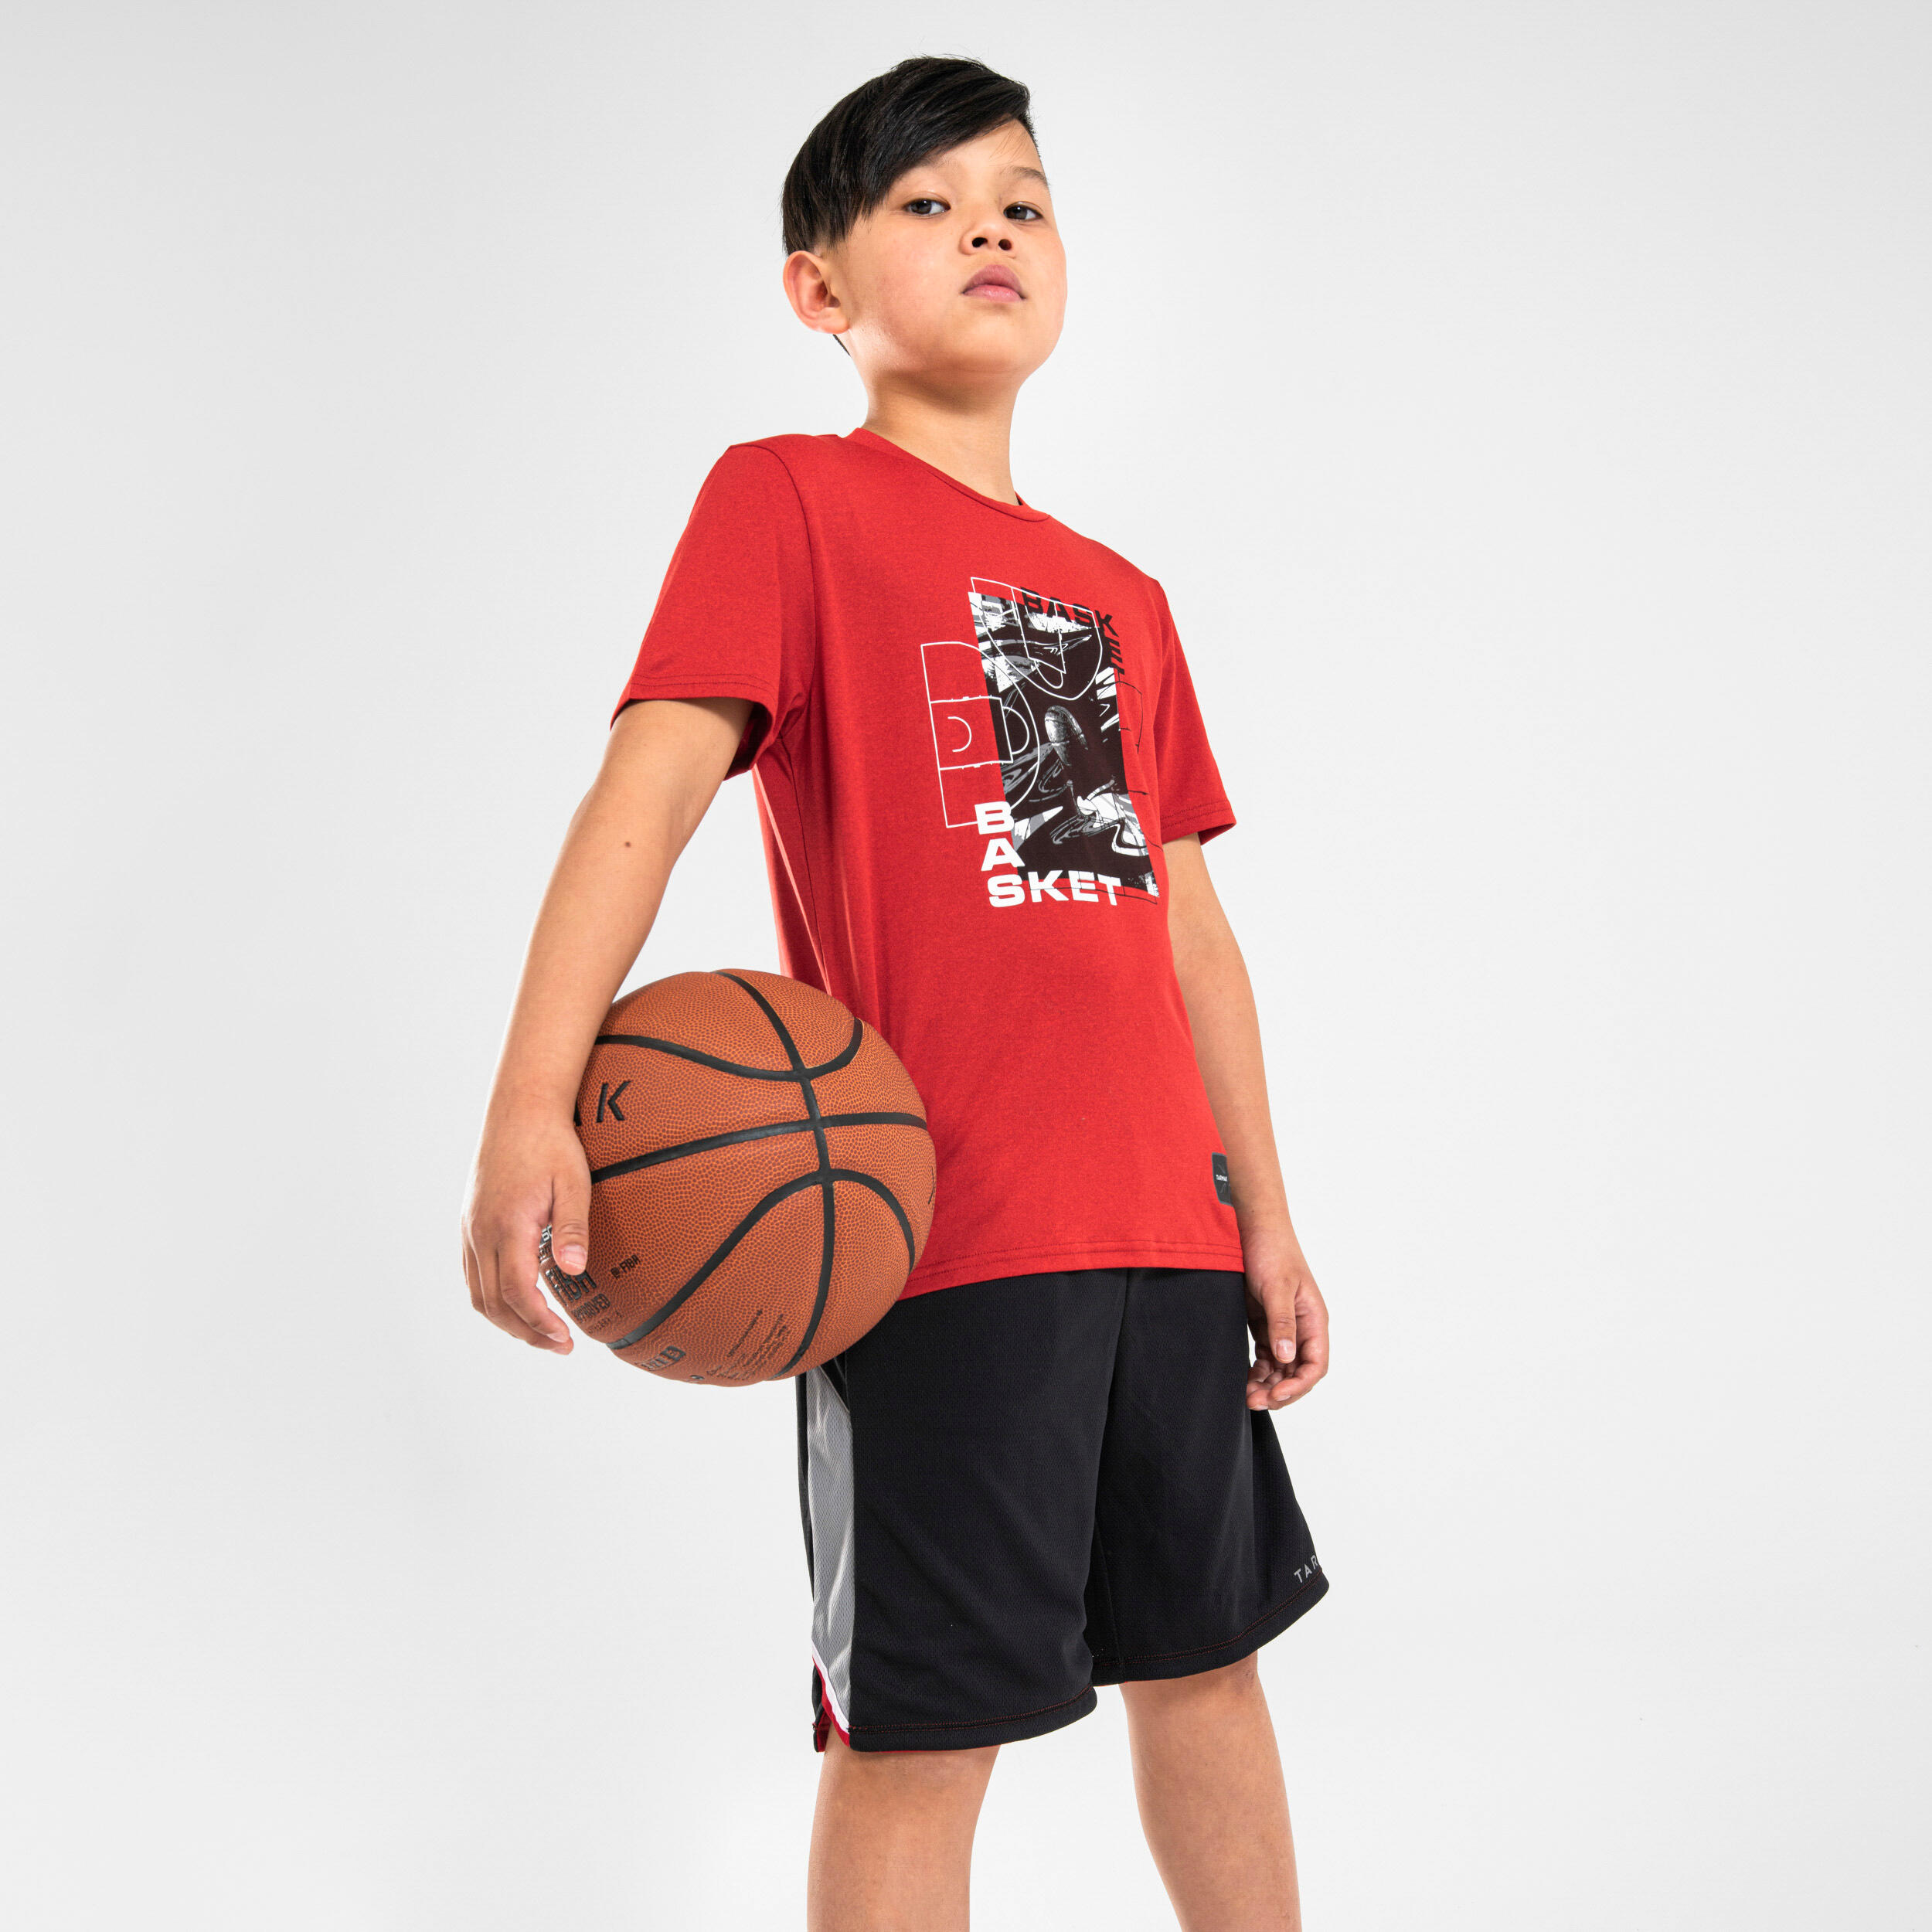 Kids' Basketball T-Shirt / Jersey TS500 Fast - Red 5/6